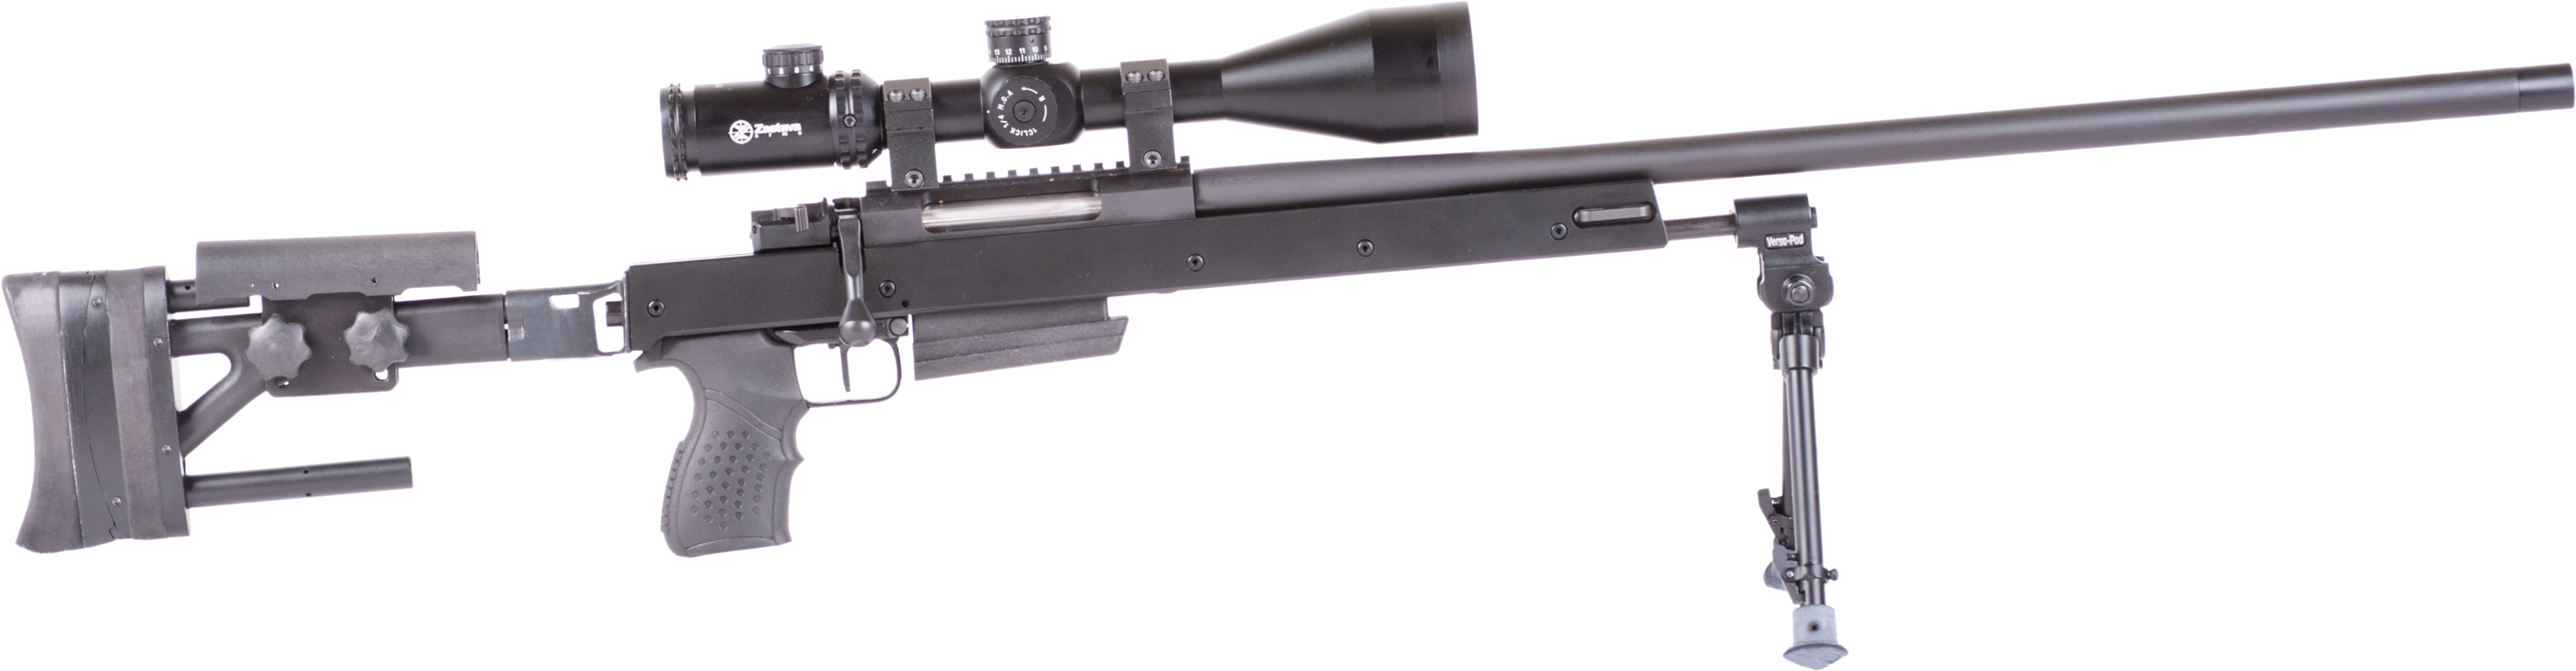 Precision Sniper Rifle Profile